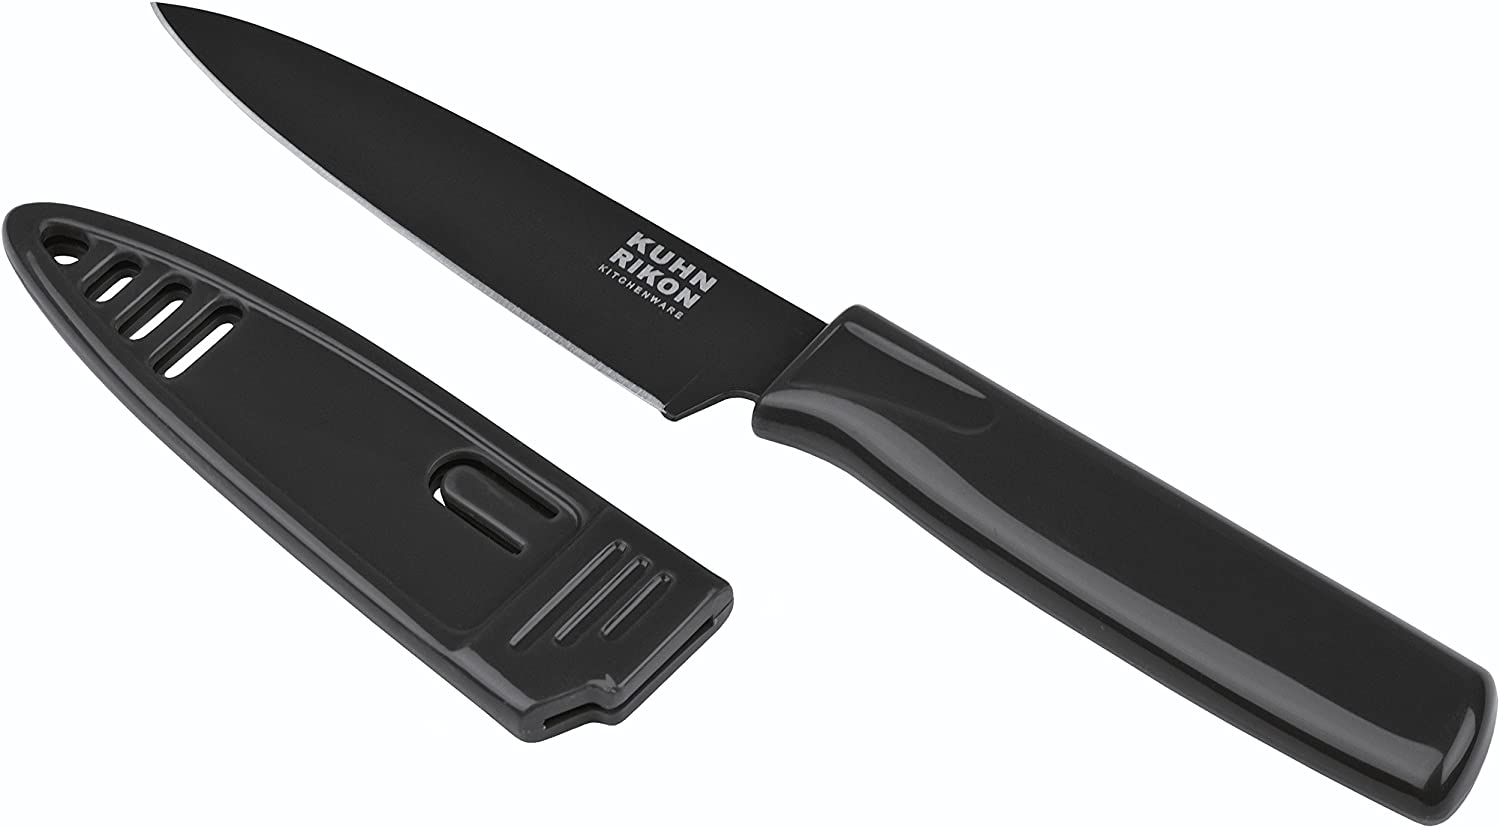 Kuhn Rikon Colori 22816 Knife Vegetable Knife 1 Peeling Knife Blade Guard – Black